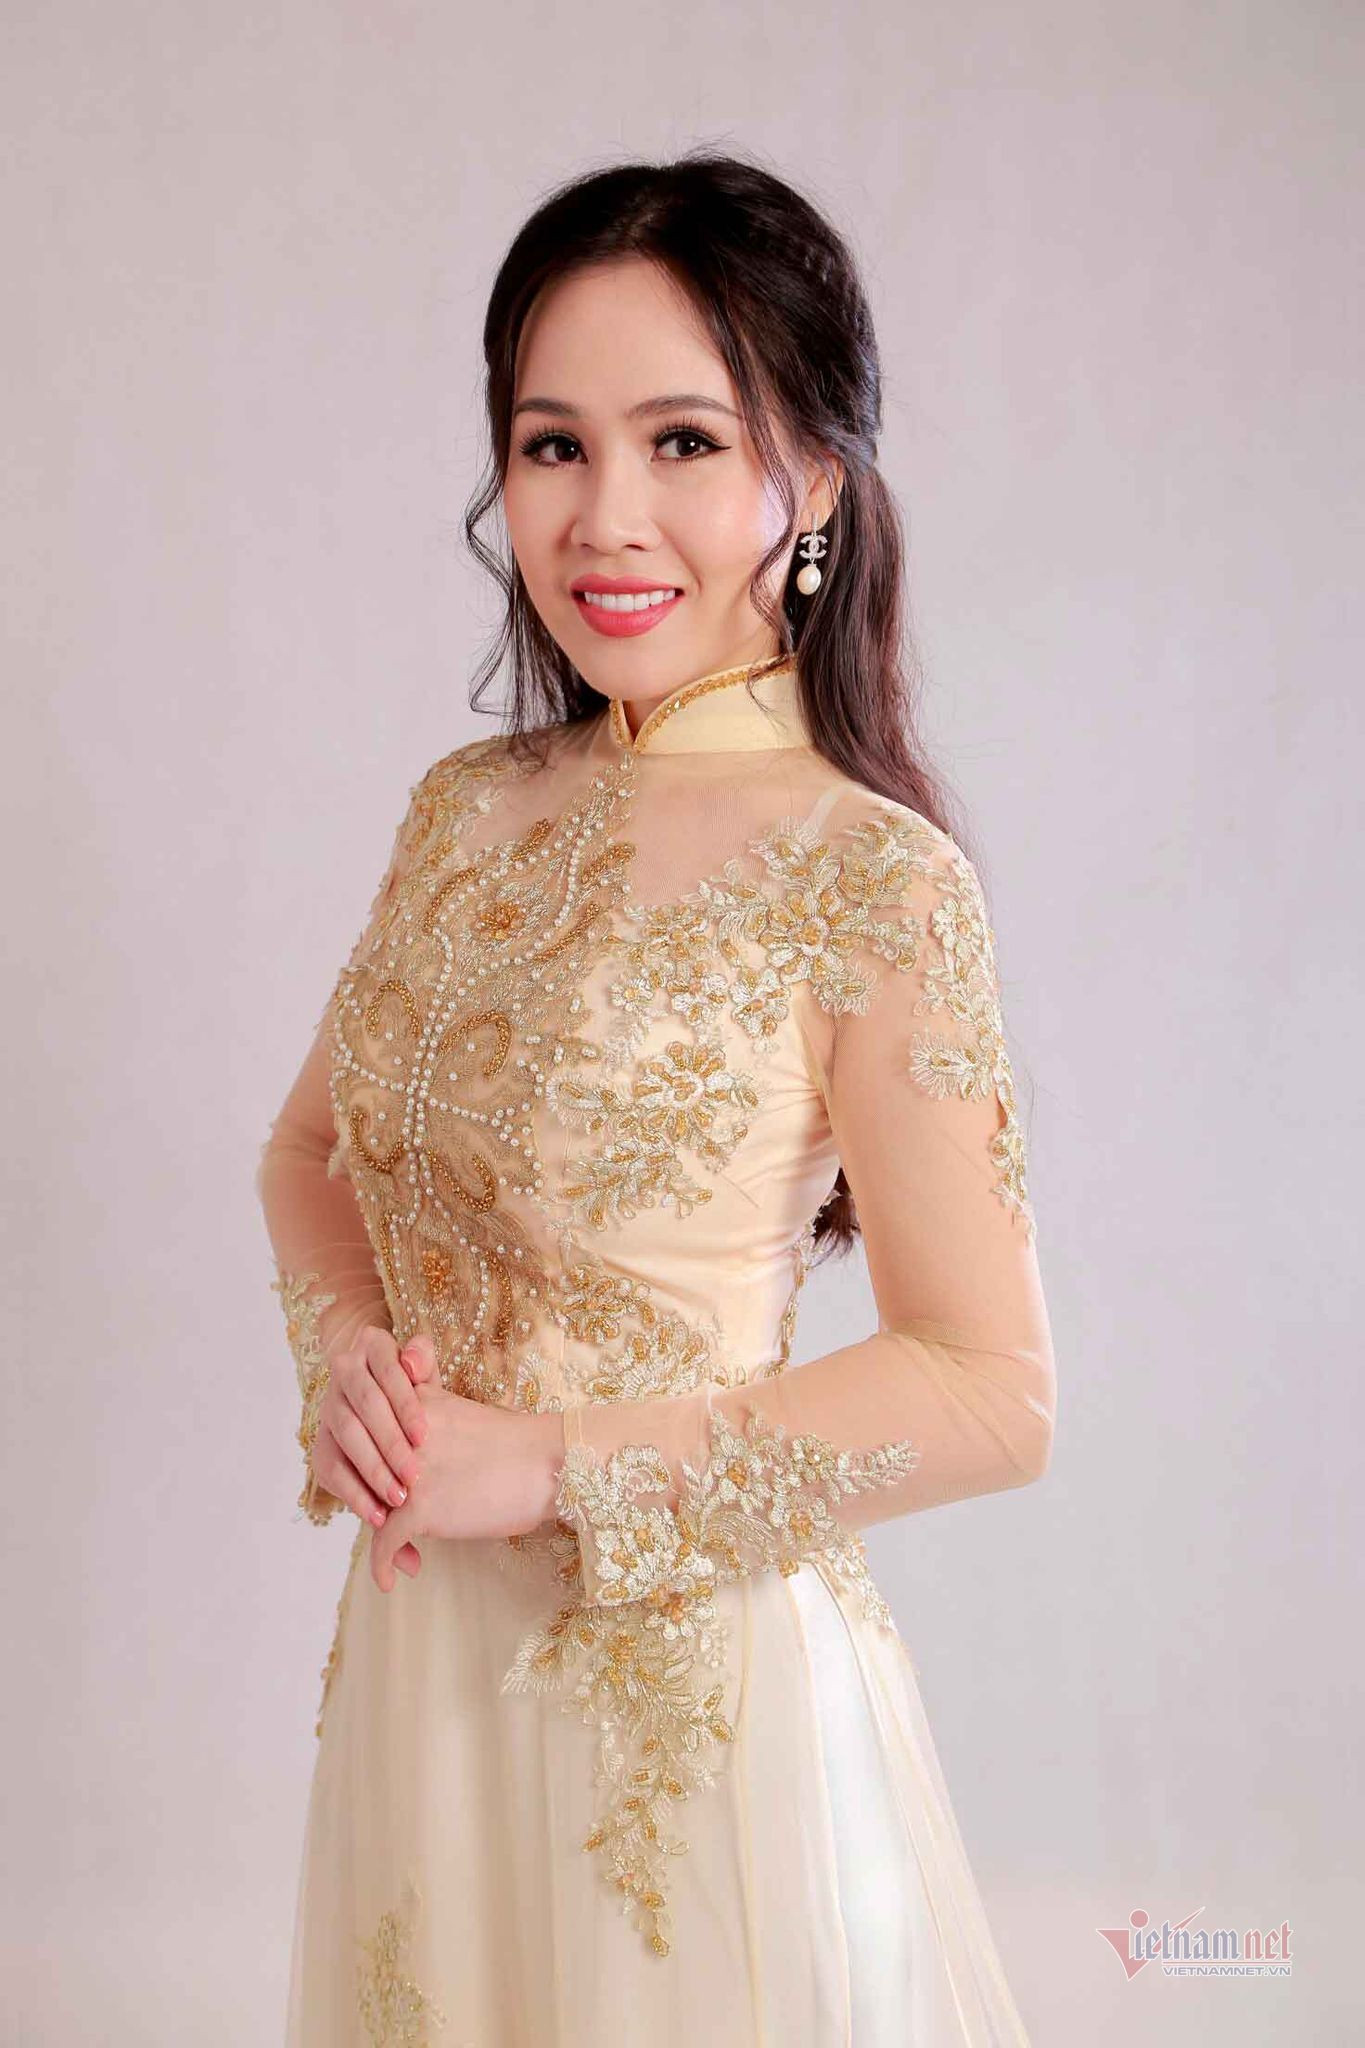 'Diễn viên lùn nhất showbiz Việt' mong sớm đoàn tụ với chồng Tây